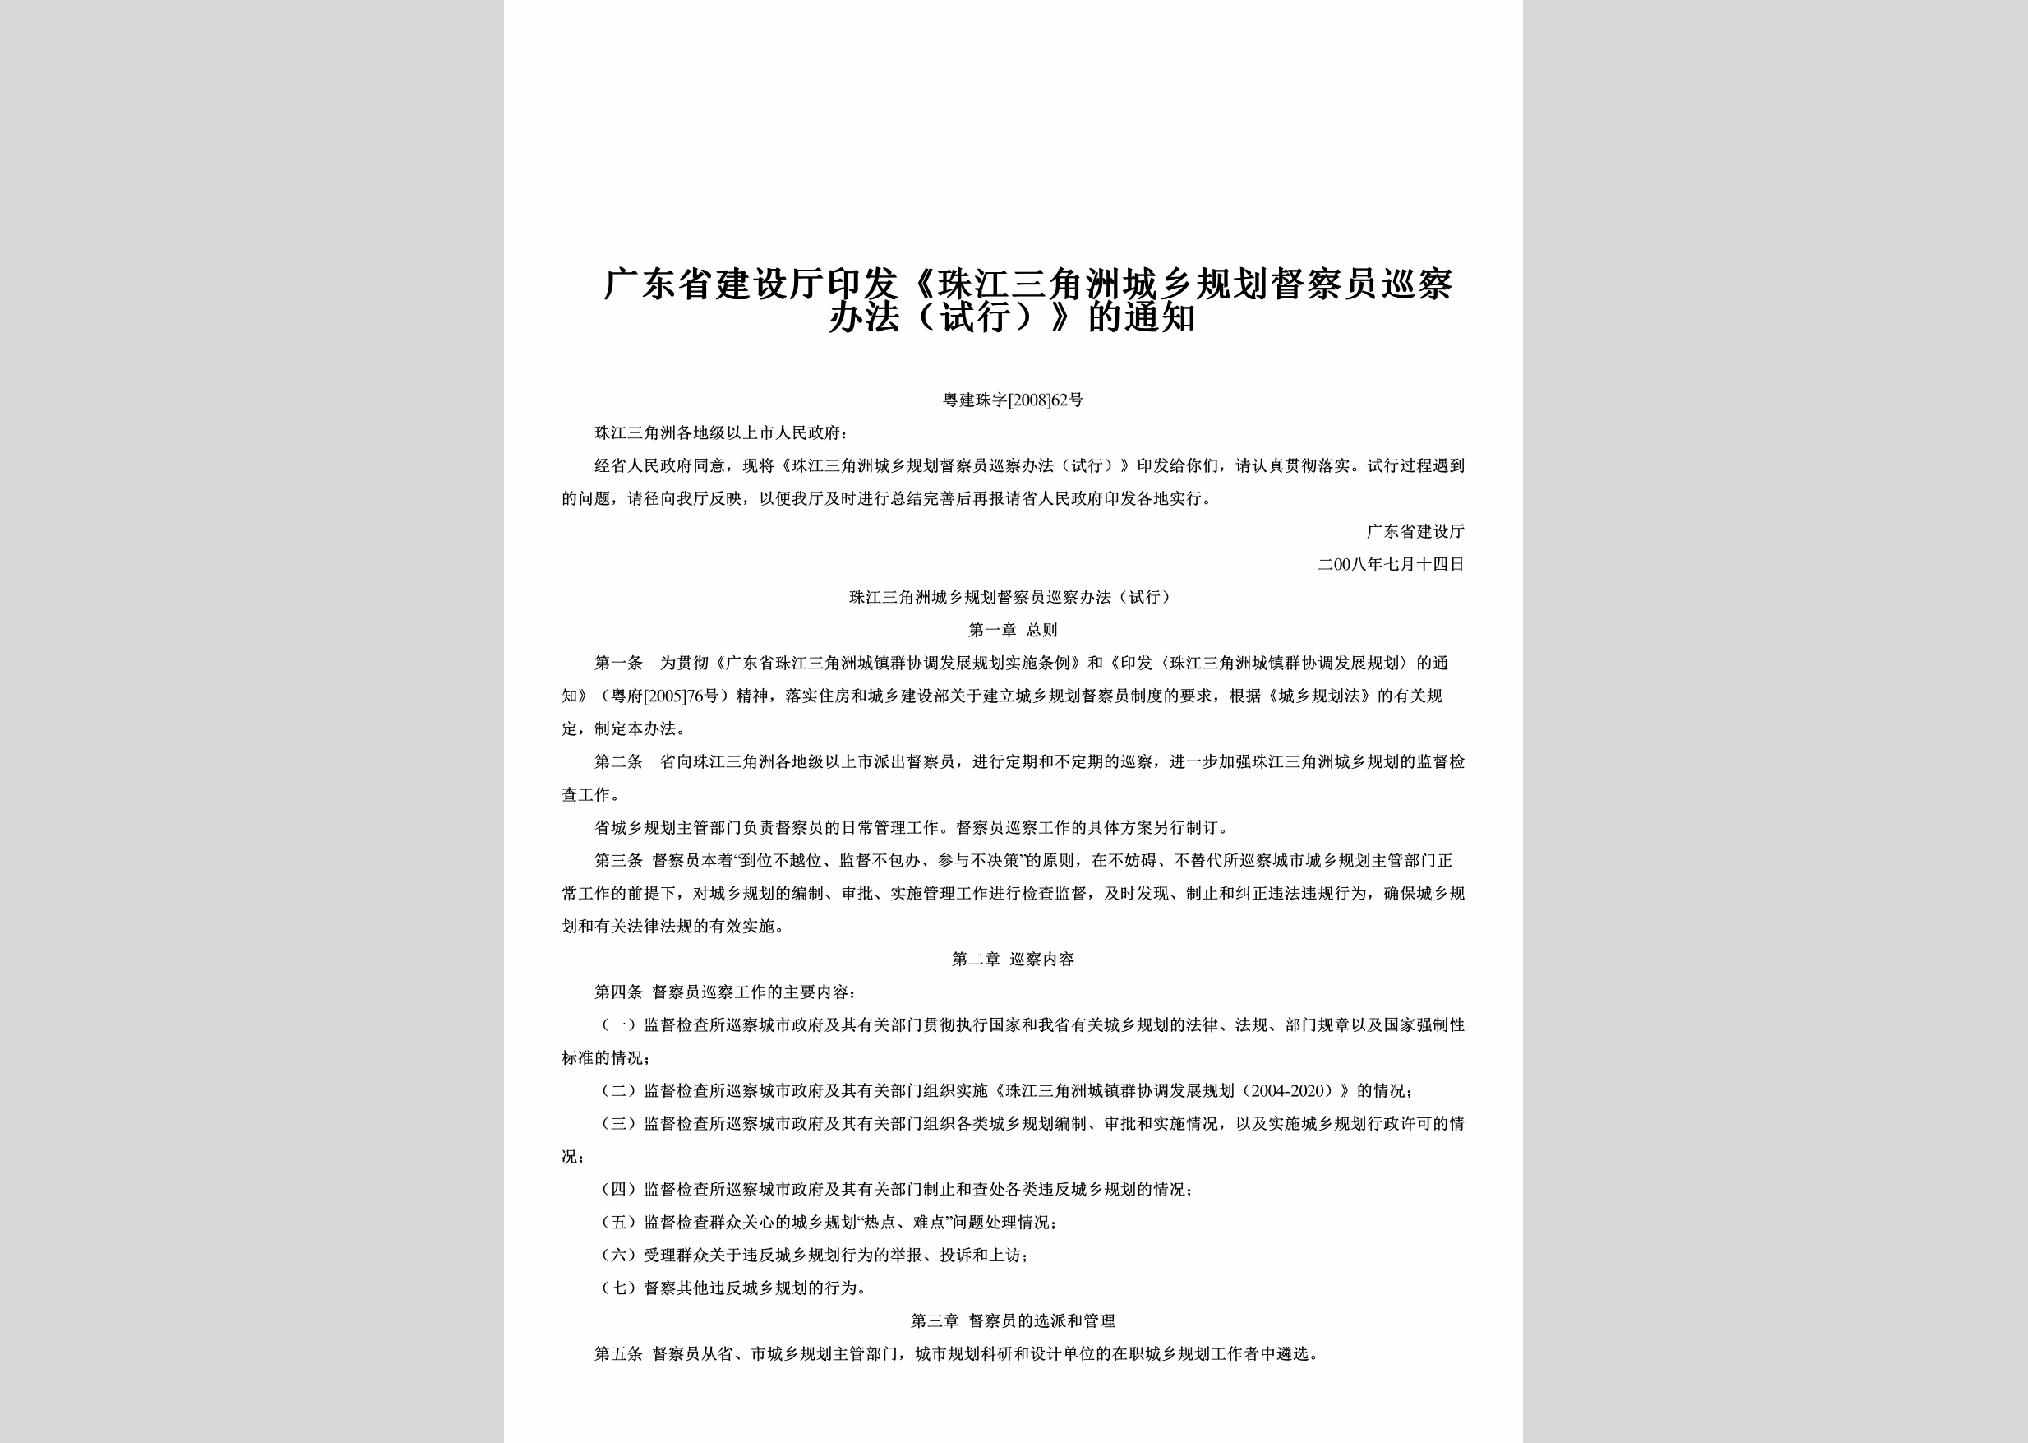 粤建珠字[2008]62号：印发《珠江三角洲城乡规划督察员巡察办法（试行）》的通知